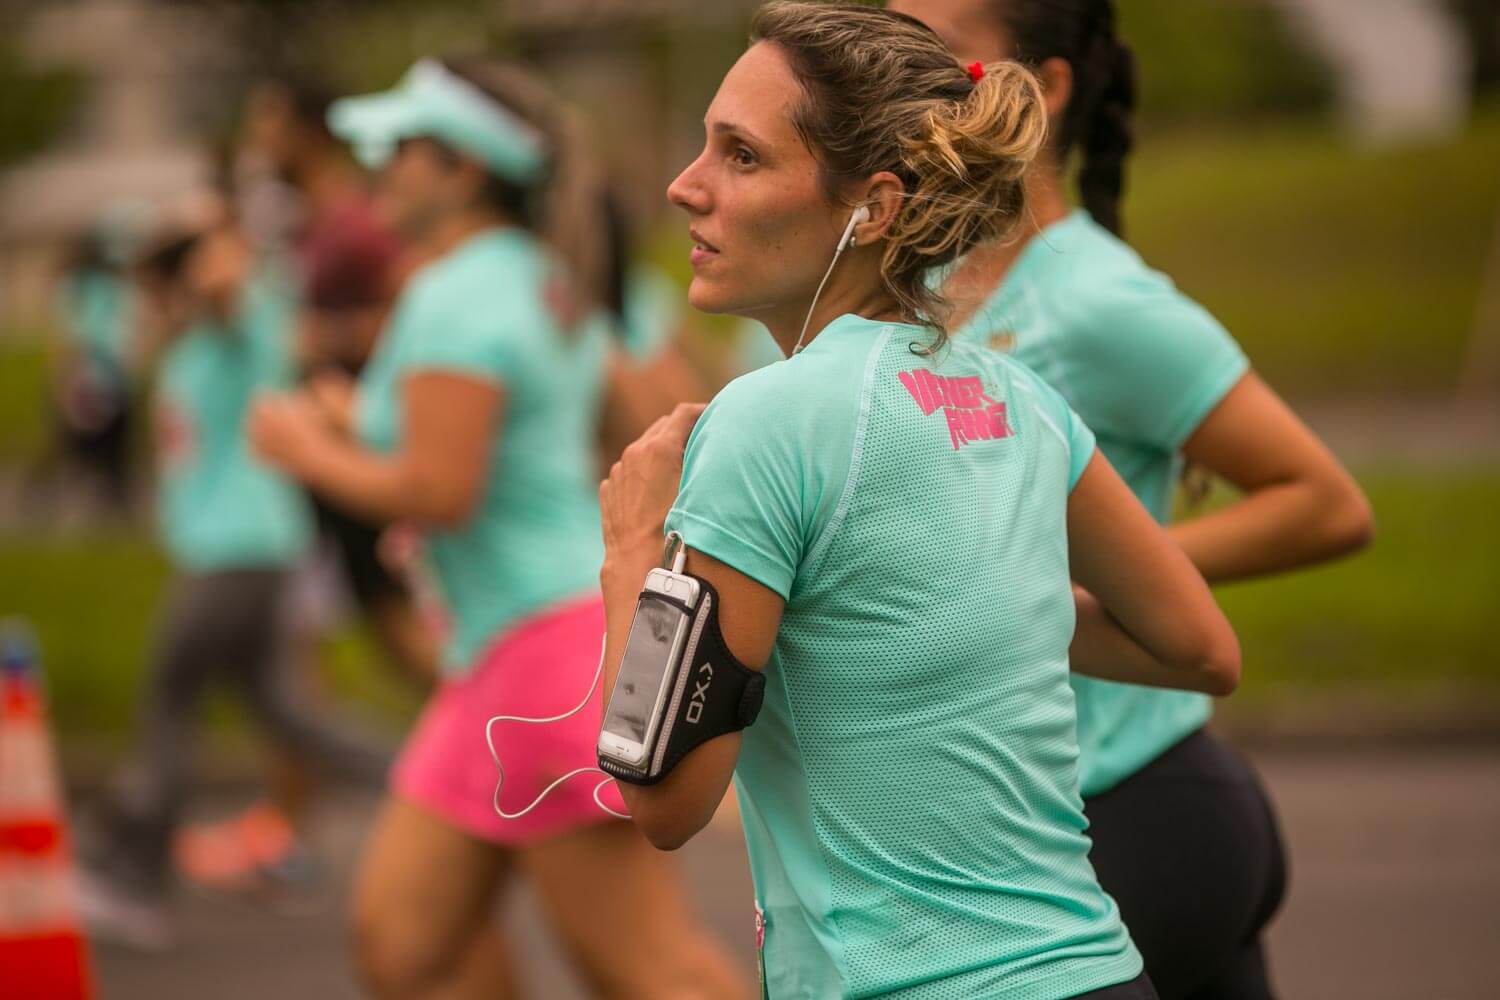 WRun reúne quase 5 mil corredoras no Rio de Janeiro